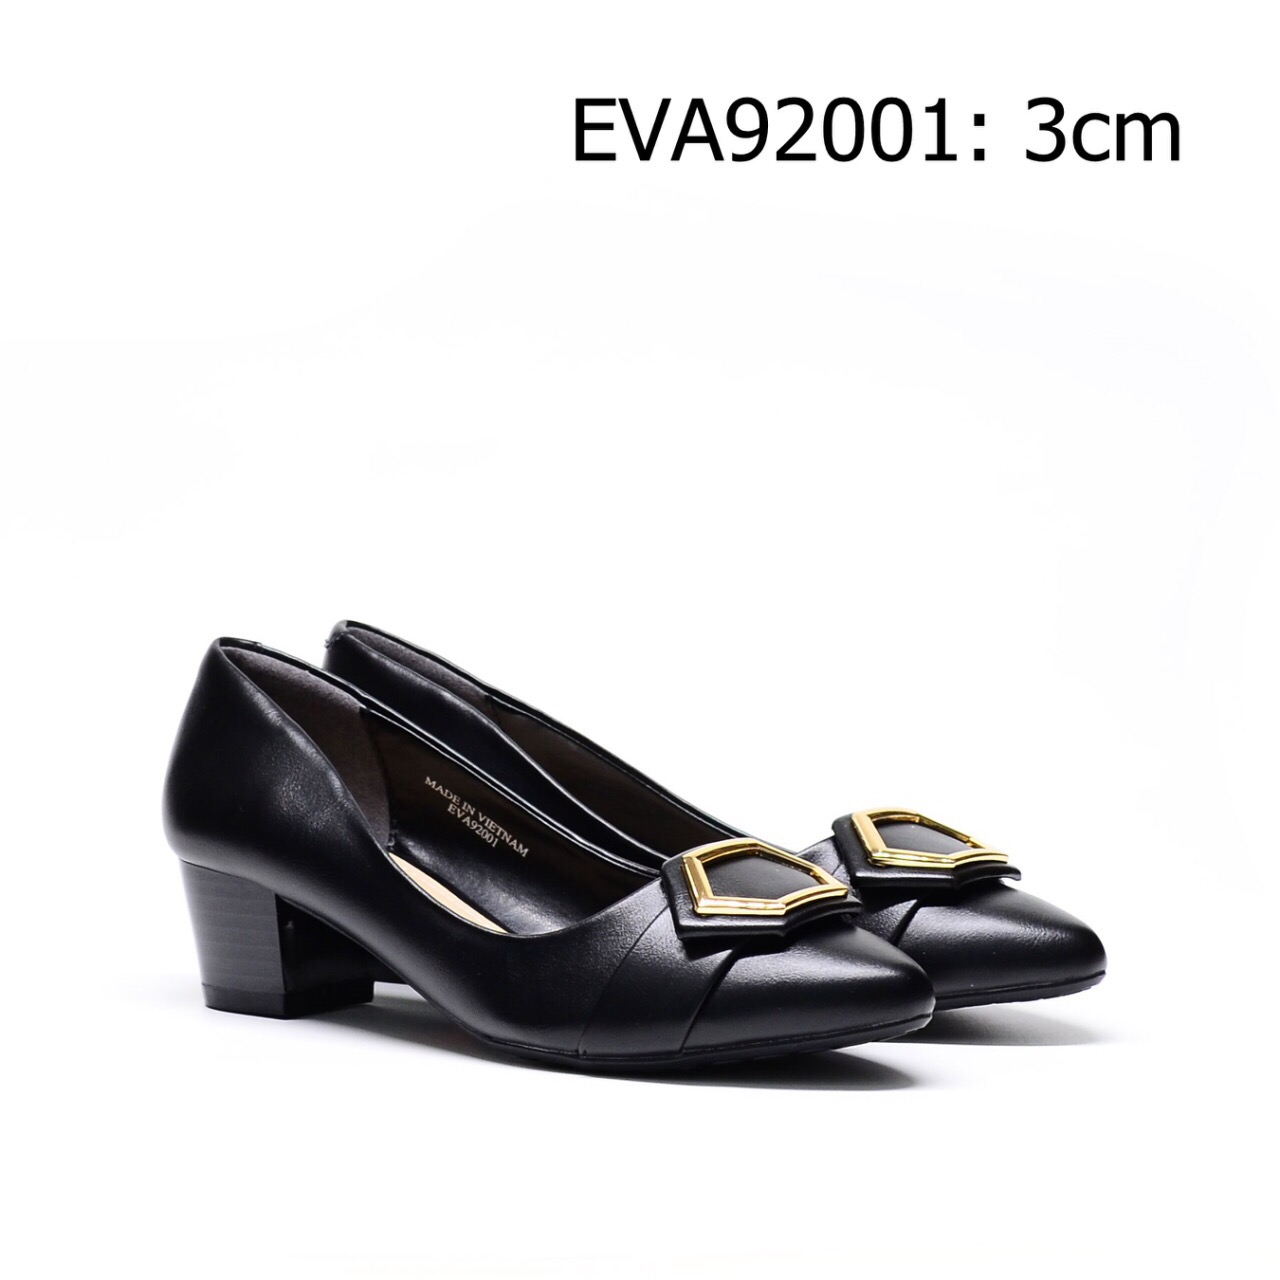 Giày gót vuông EVA92001 phối nơ kim loại nổi bật mới